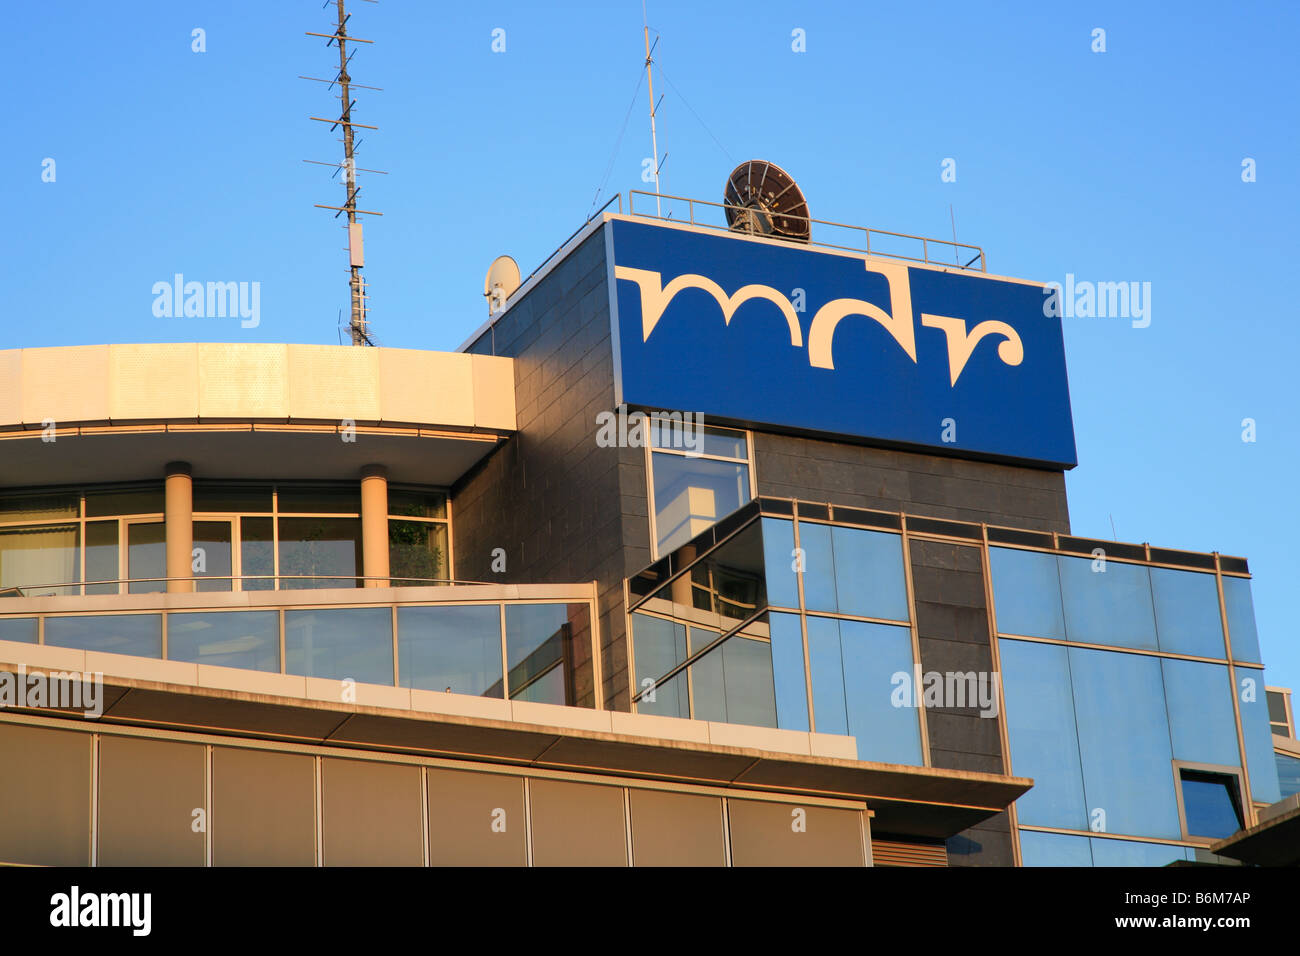 Placa de nombre sign mdr en la parte superior del edificio de oficinas de la estación de televisión Mitteldeutscher Rundfunk de Halle, Alemania Foto de stock